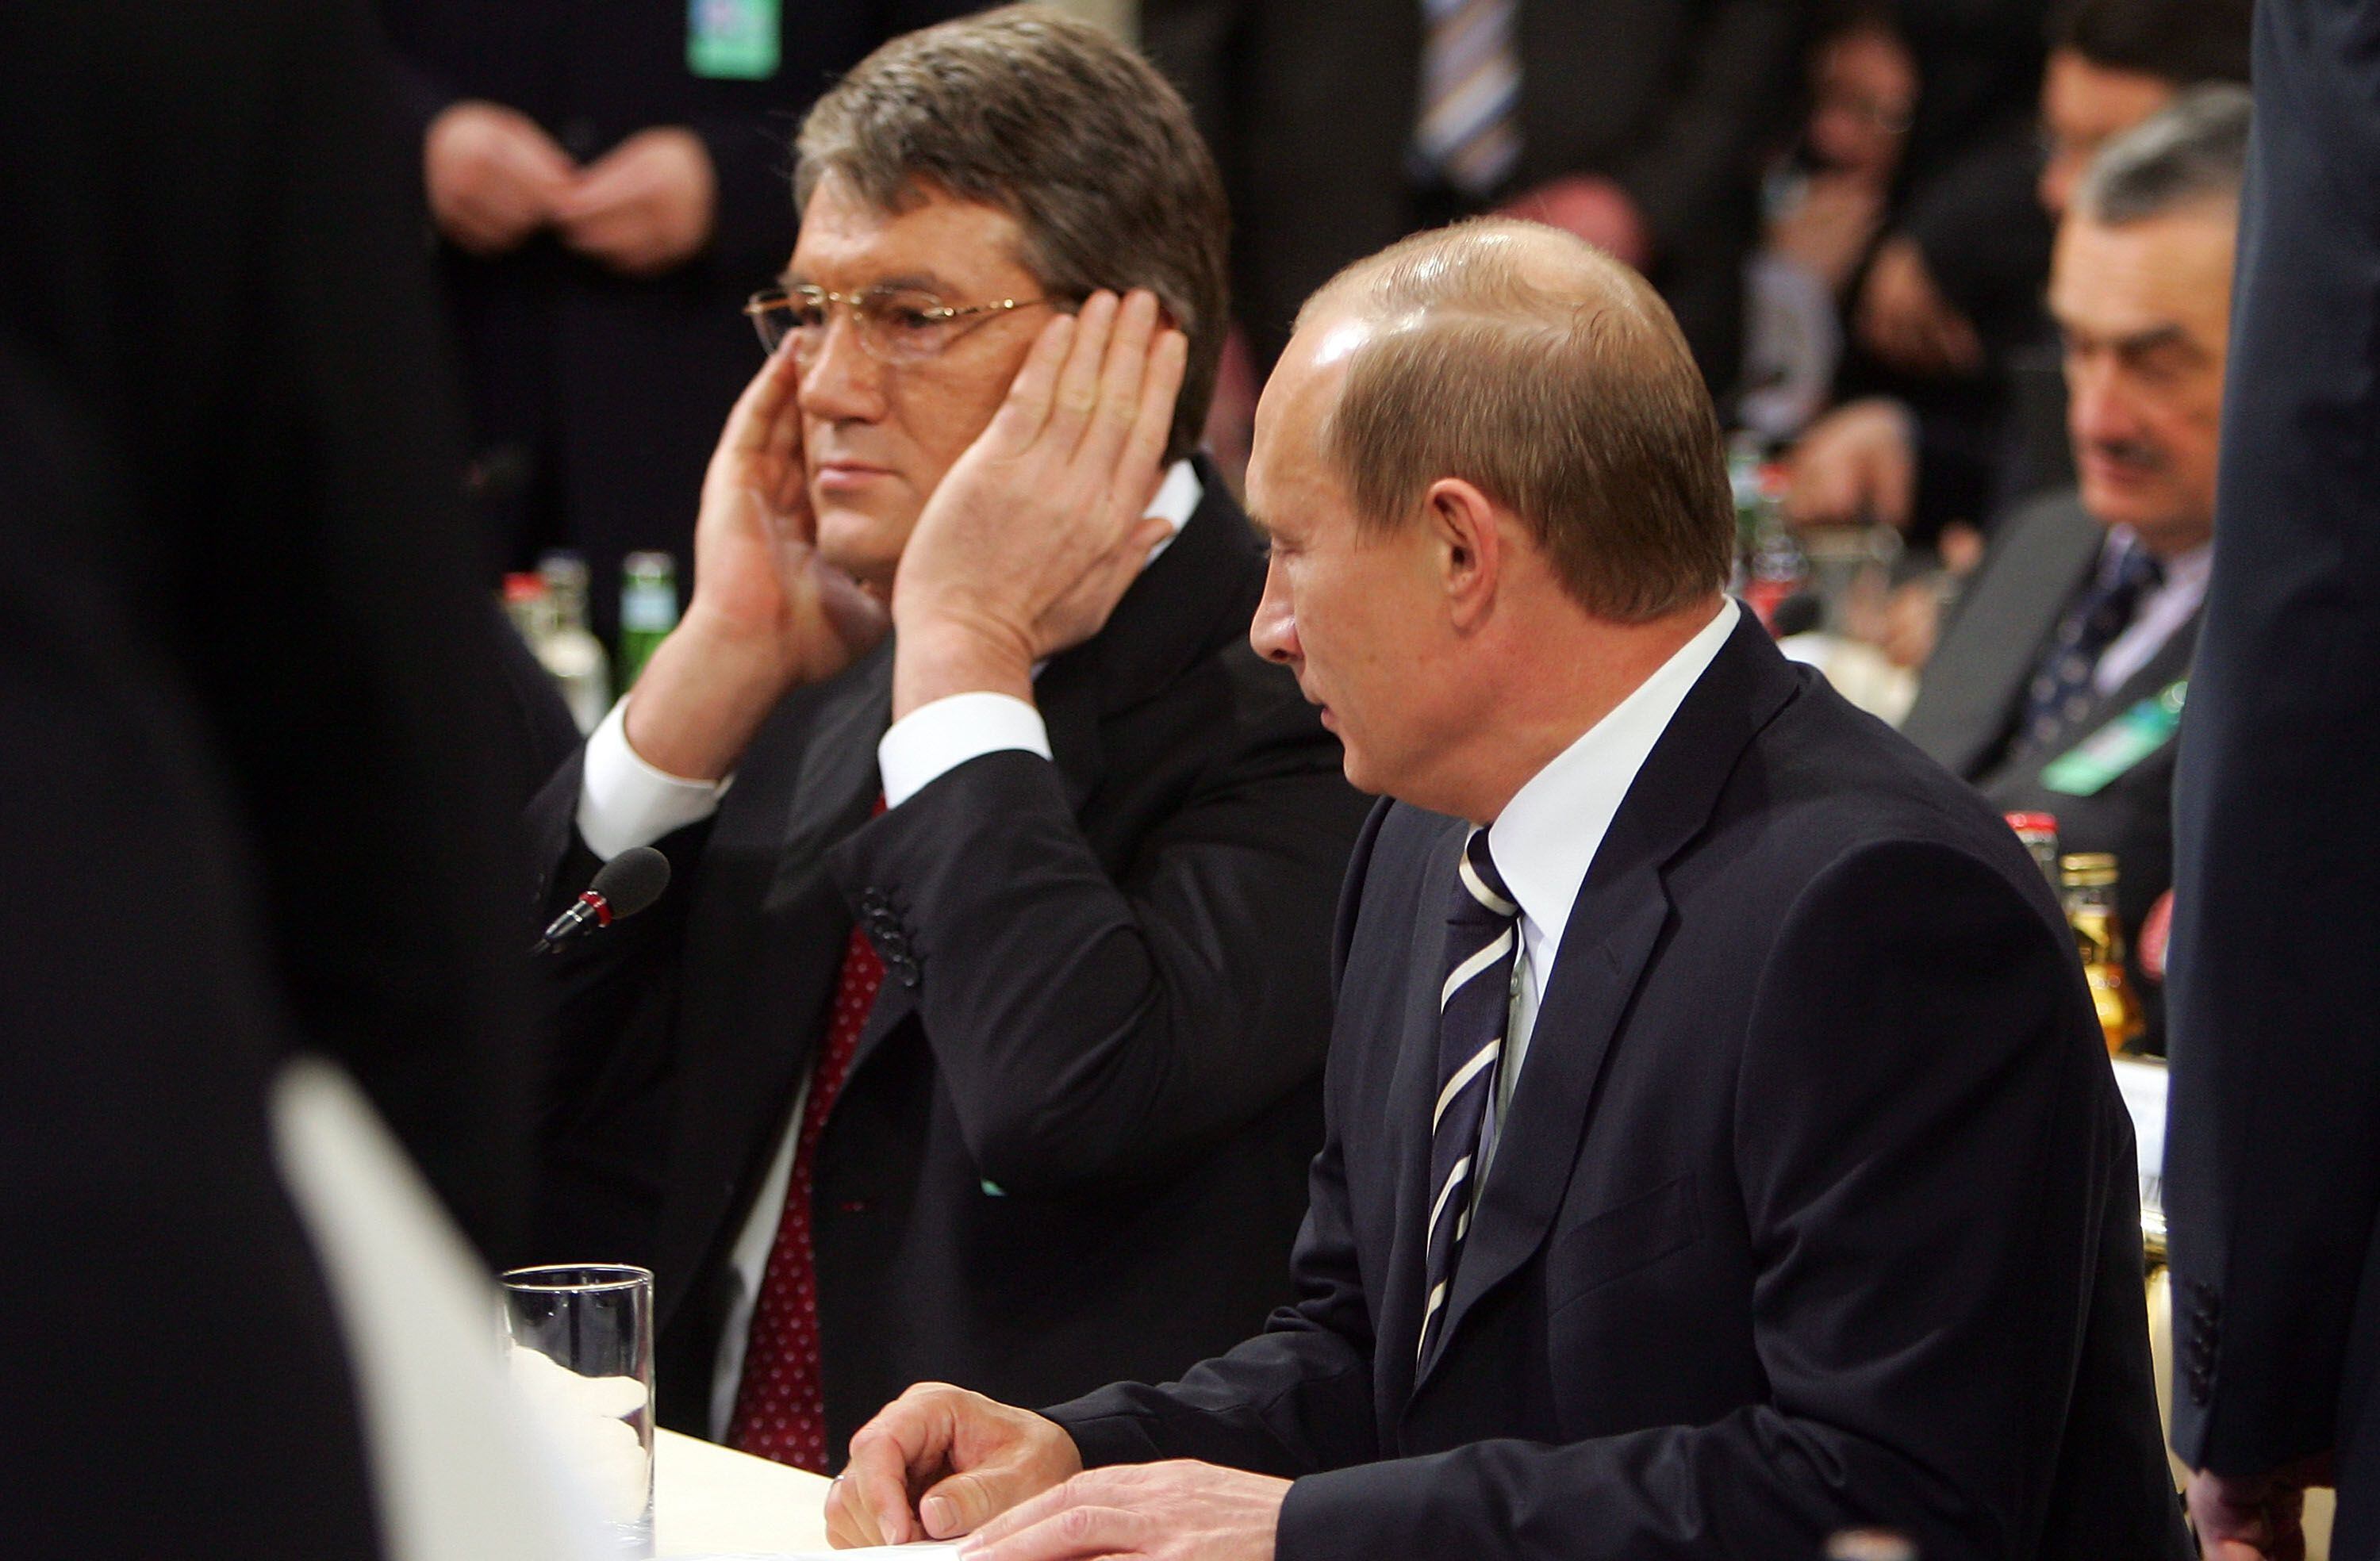 El presidente ucranio Viktor Yushchenko (izquierda) y Vladimir Putin en la Conferencia de Seguridad de Múnich, en febrero de 2007.